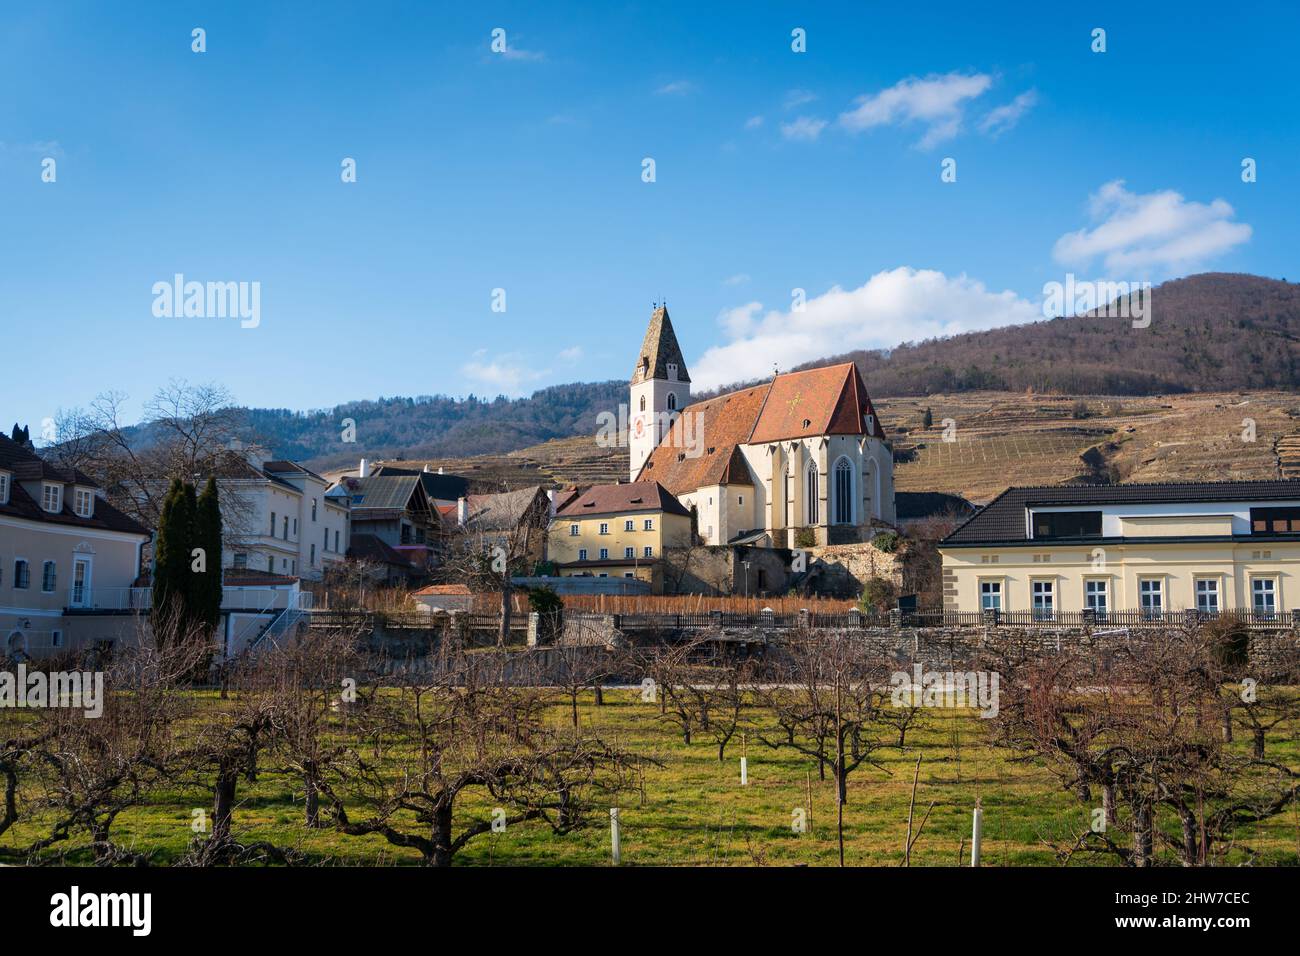 Spitz an der Donau. Famoso villaggio e chiesa sul danubio nella regione di Wachau della bassa Austria Foto Stock